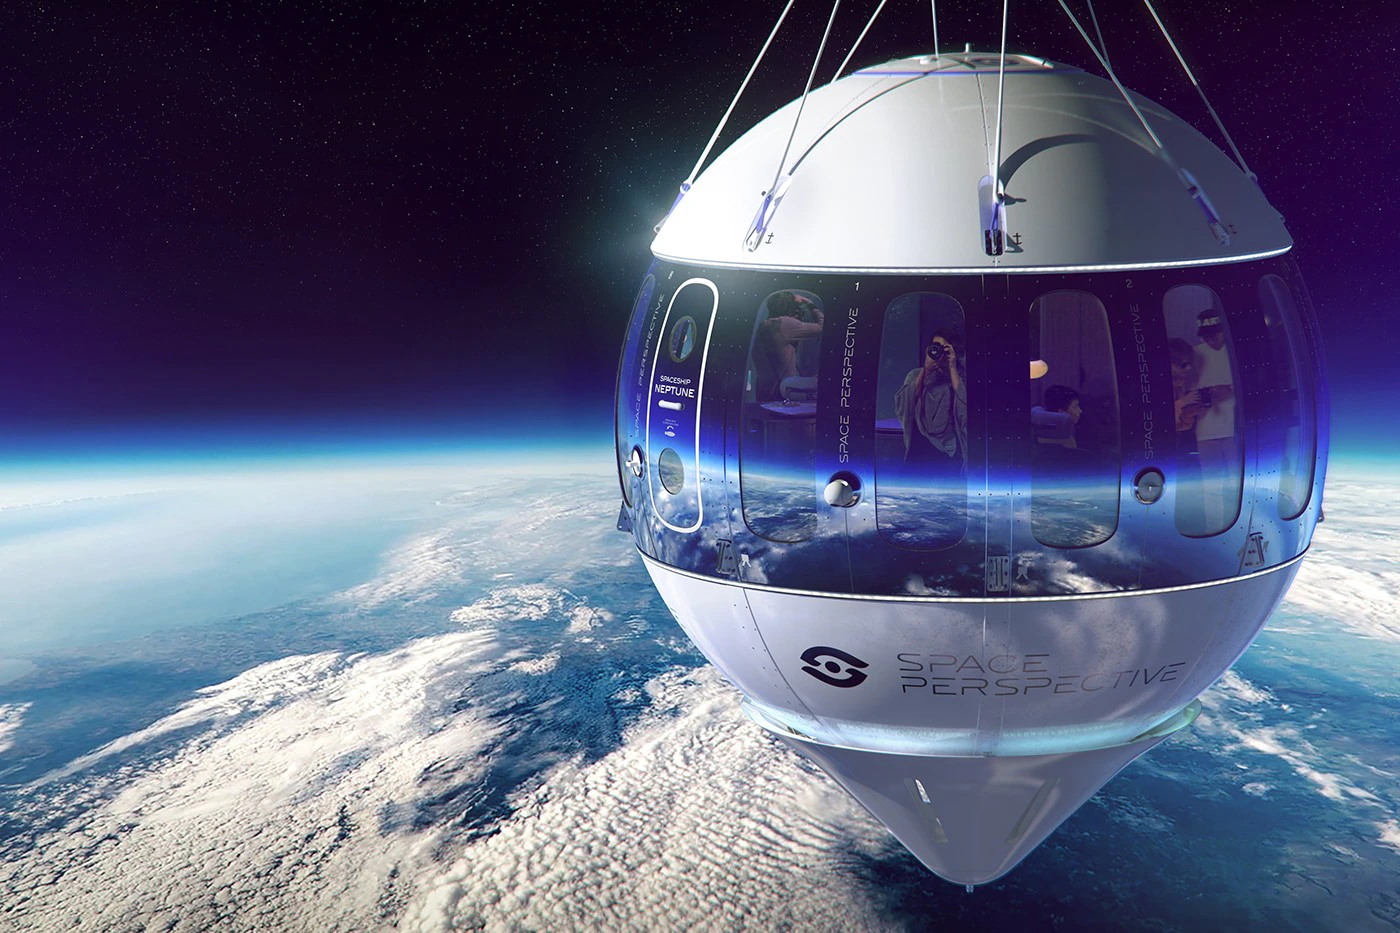 Space Perspective enthüllt das Design einer luxuriösen Weltraum-Urlaubskapsel